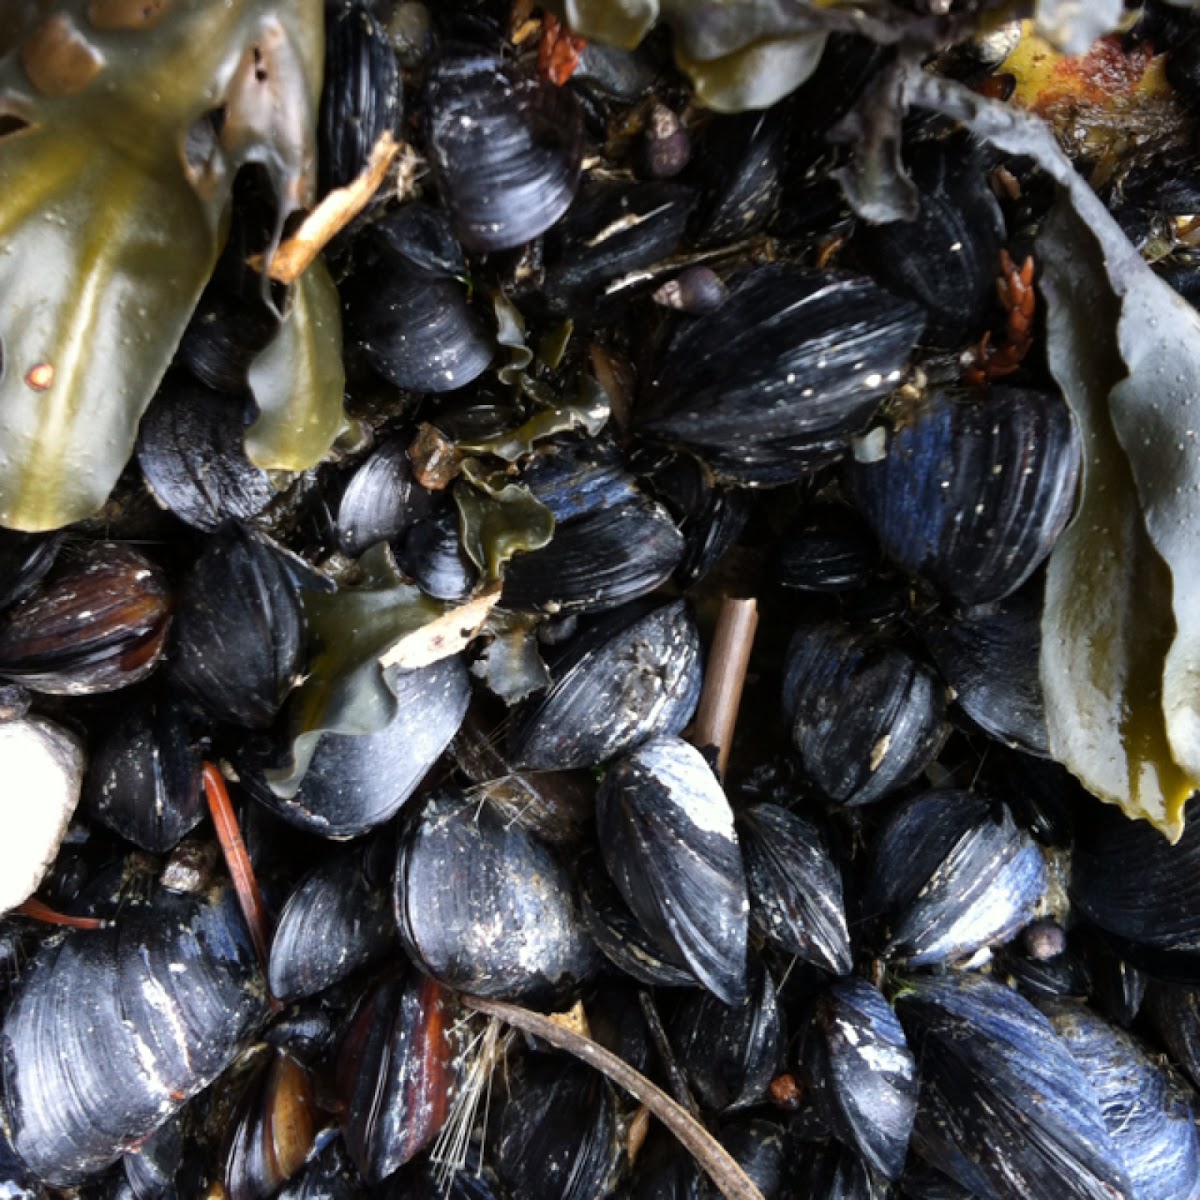 California mussel